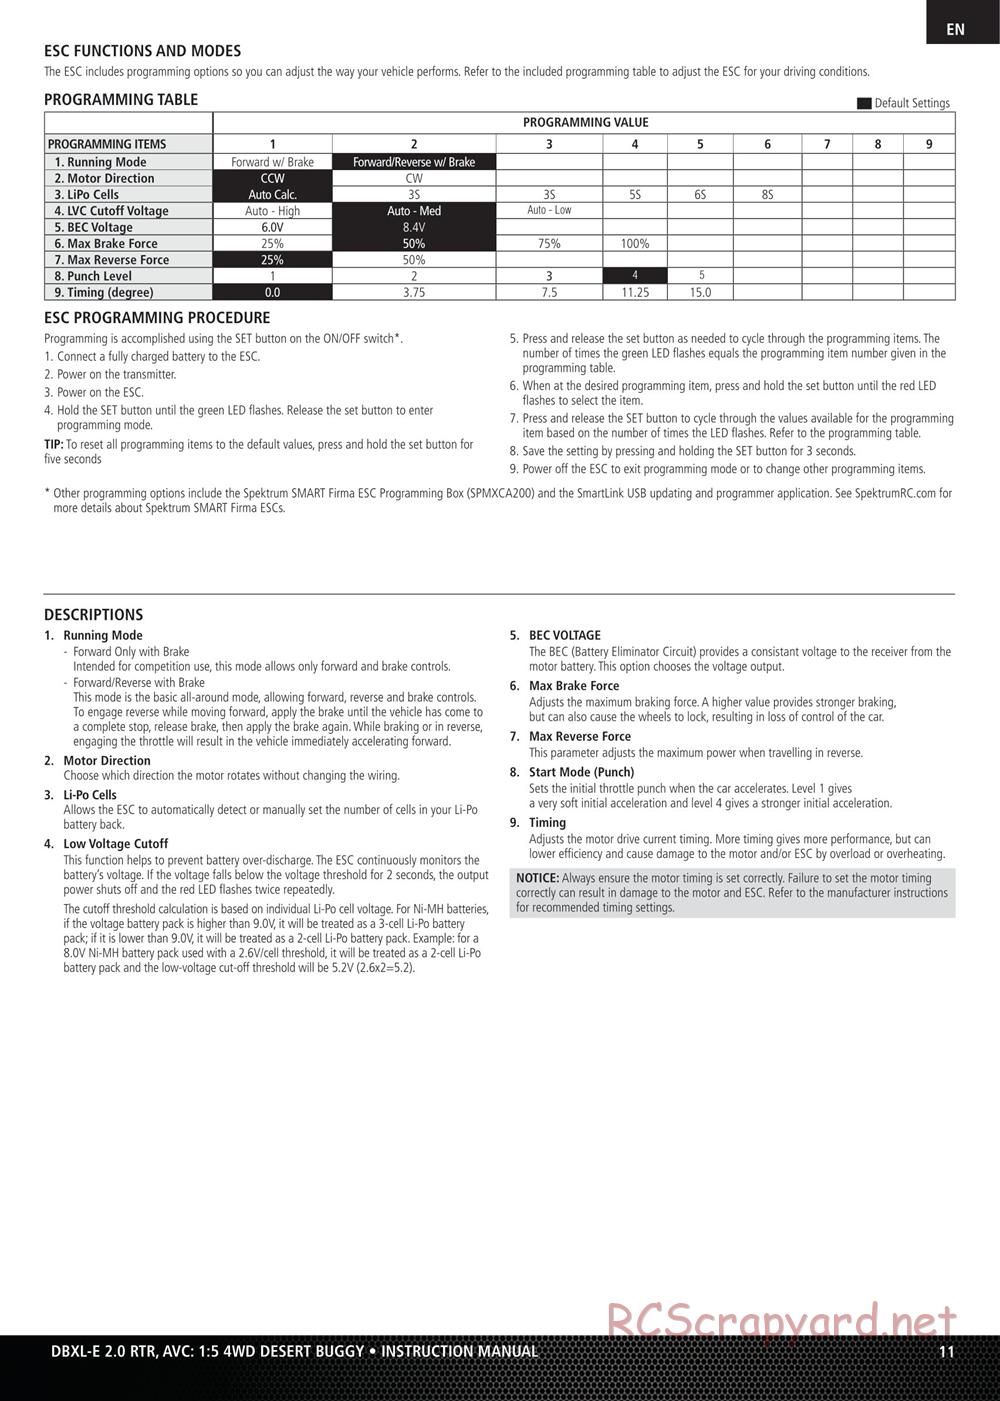 Team Losi - DBXL-E 2.0 - Manual - Page 11